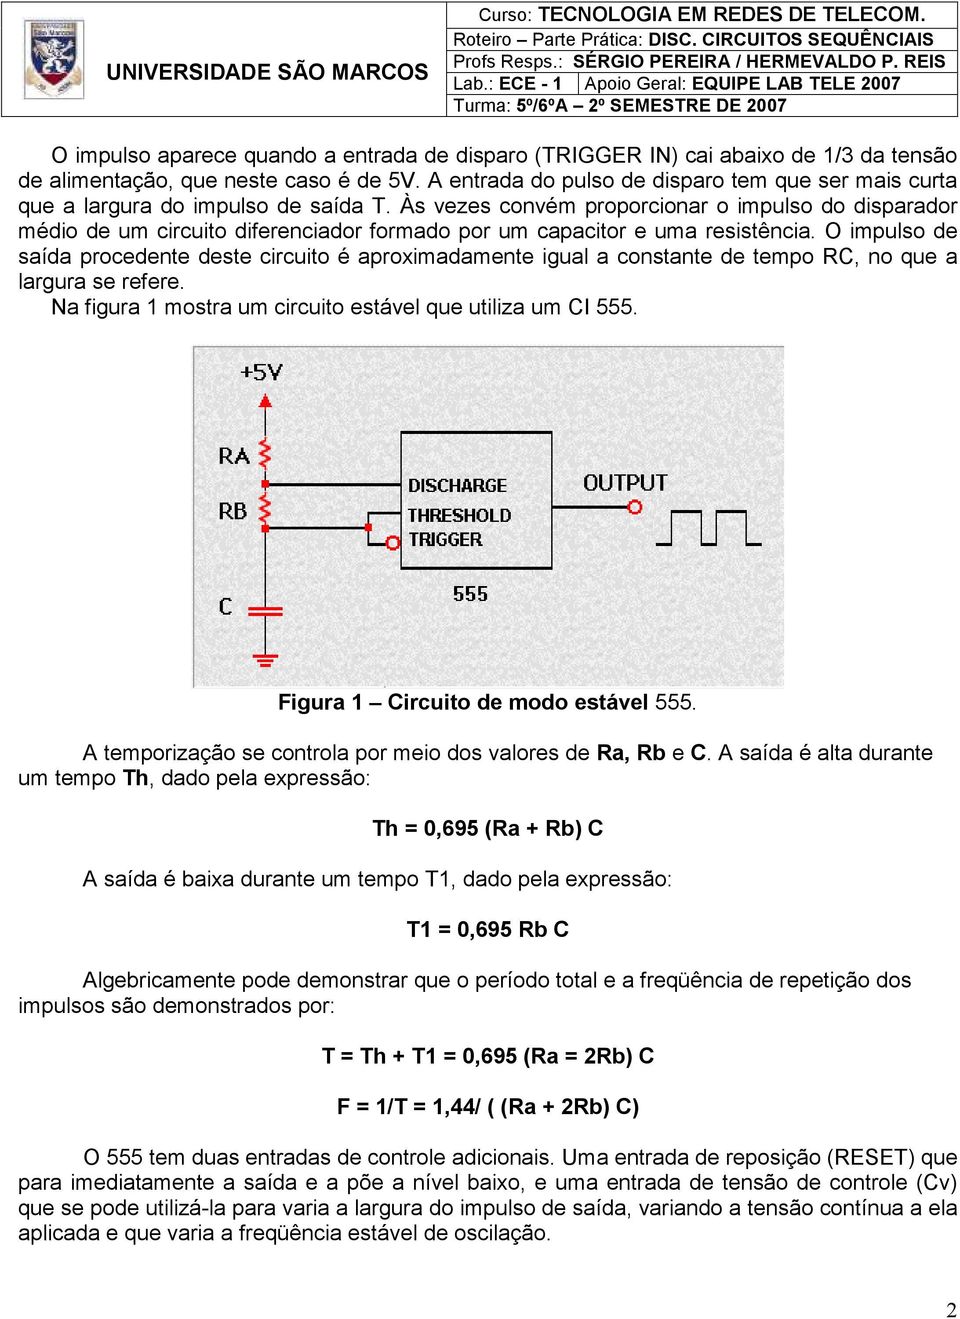 Às vezes convém proporcionar o impulso do disparador médio de um circuito diferenciador formado por um capacitor e uma resistência.